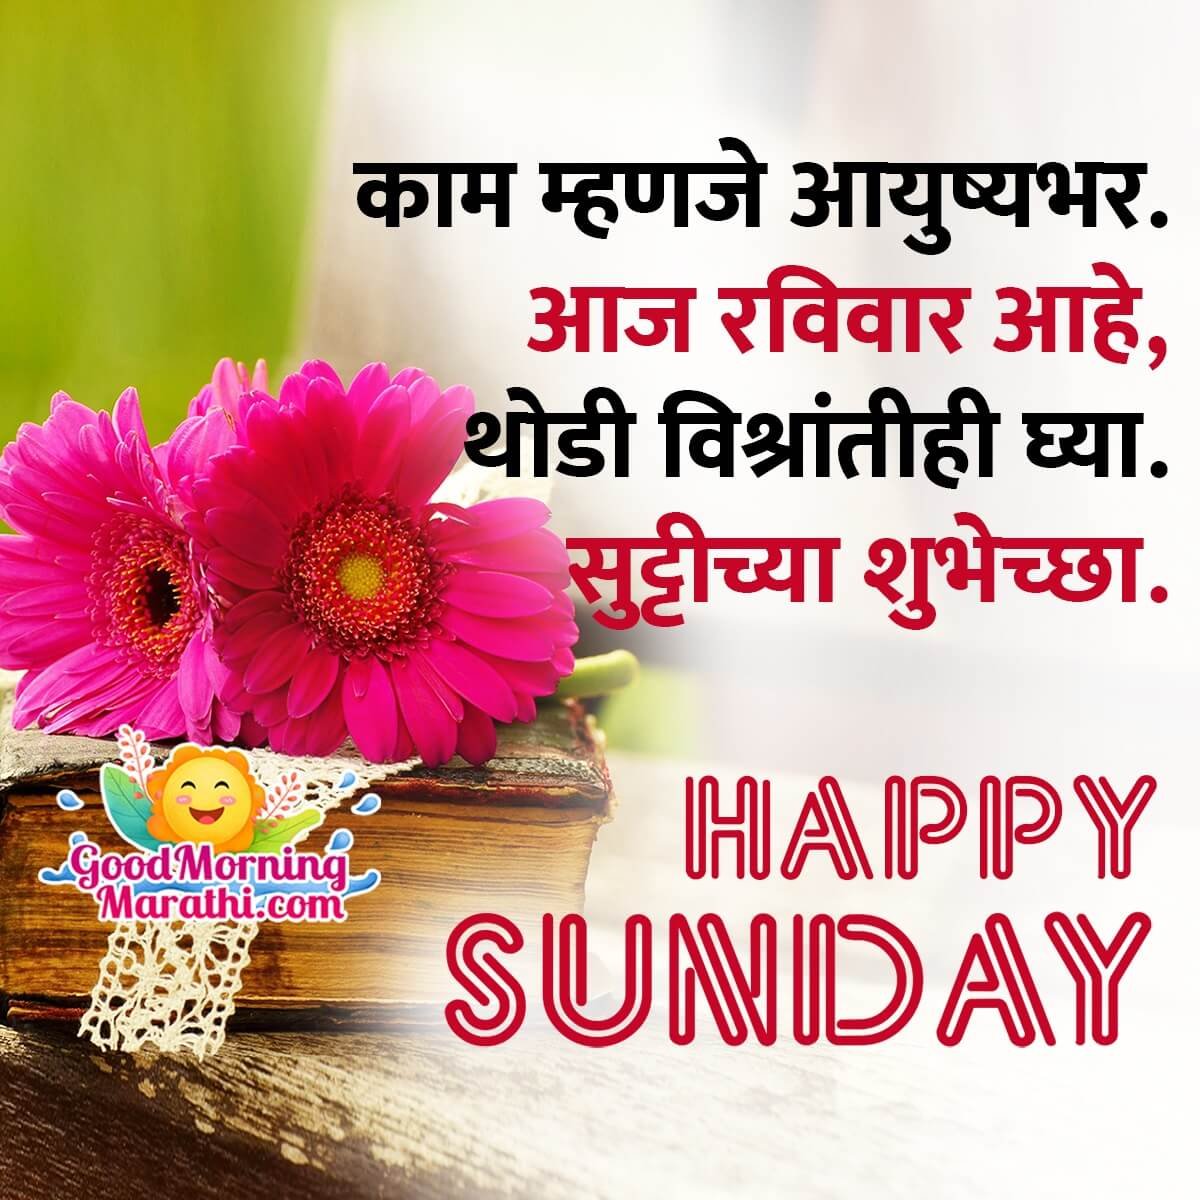 Good Morning Sunday Message In Marathi